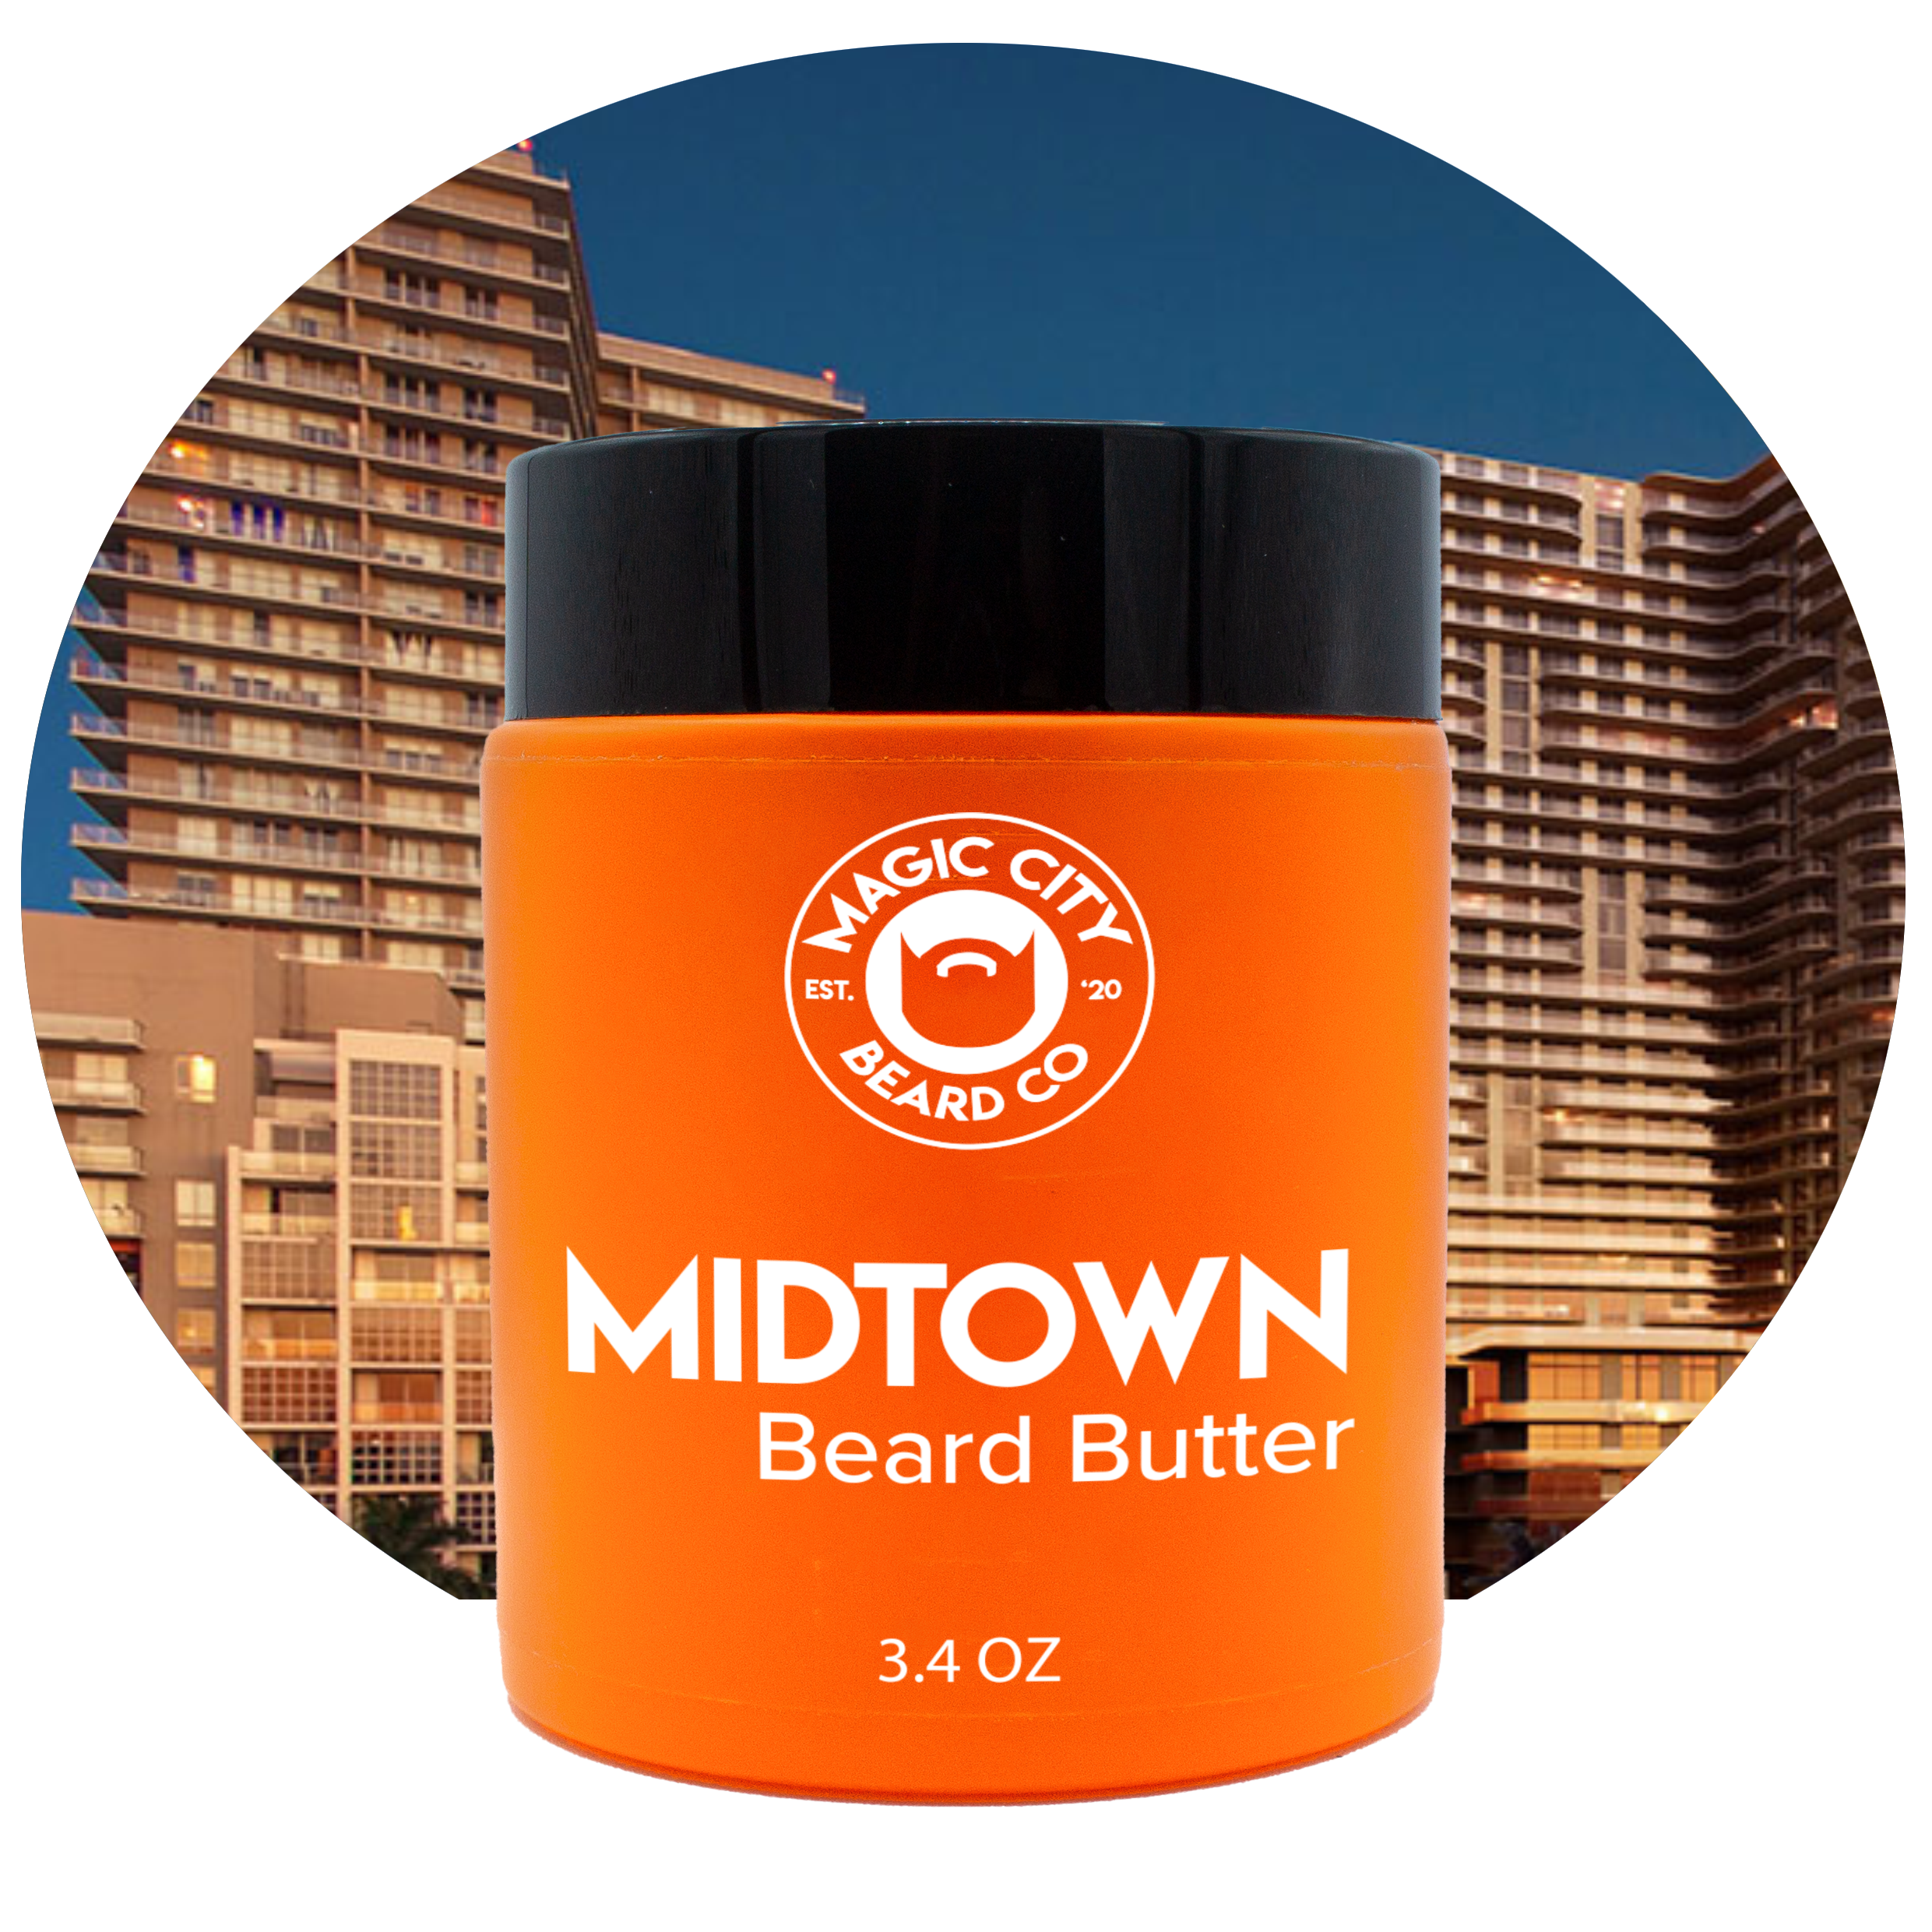 Midtown Beard Butter